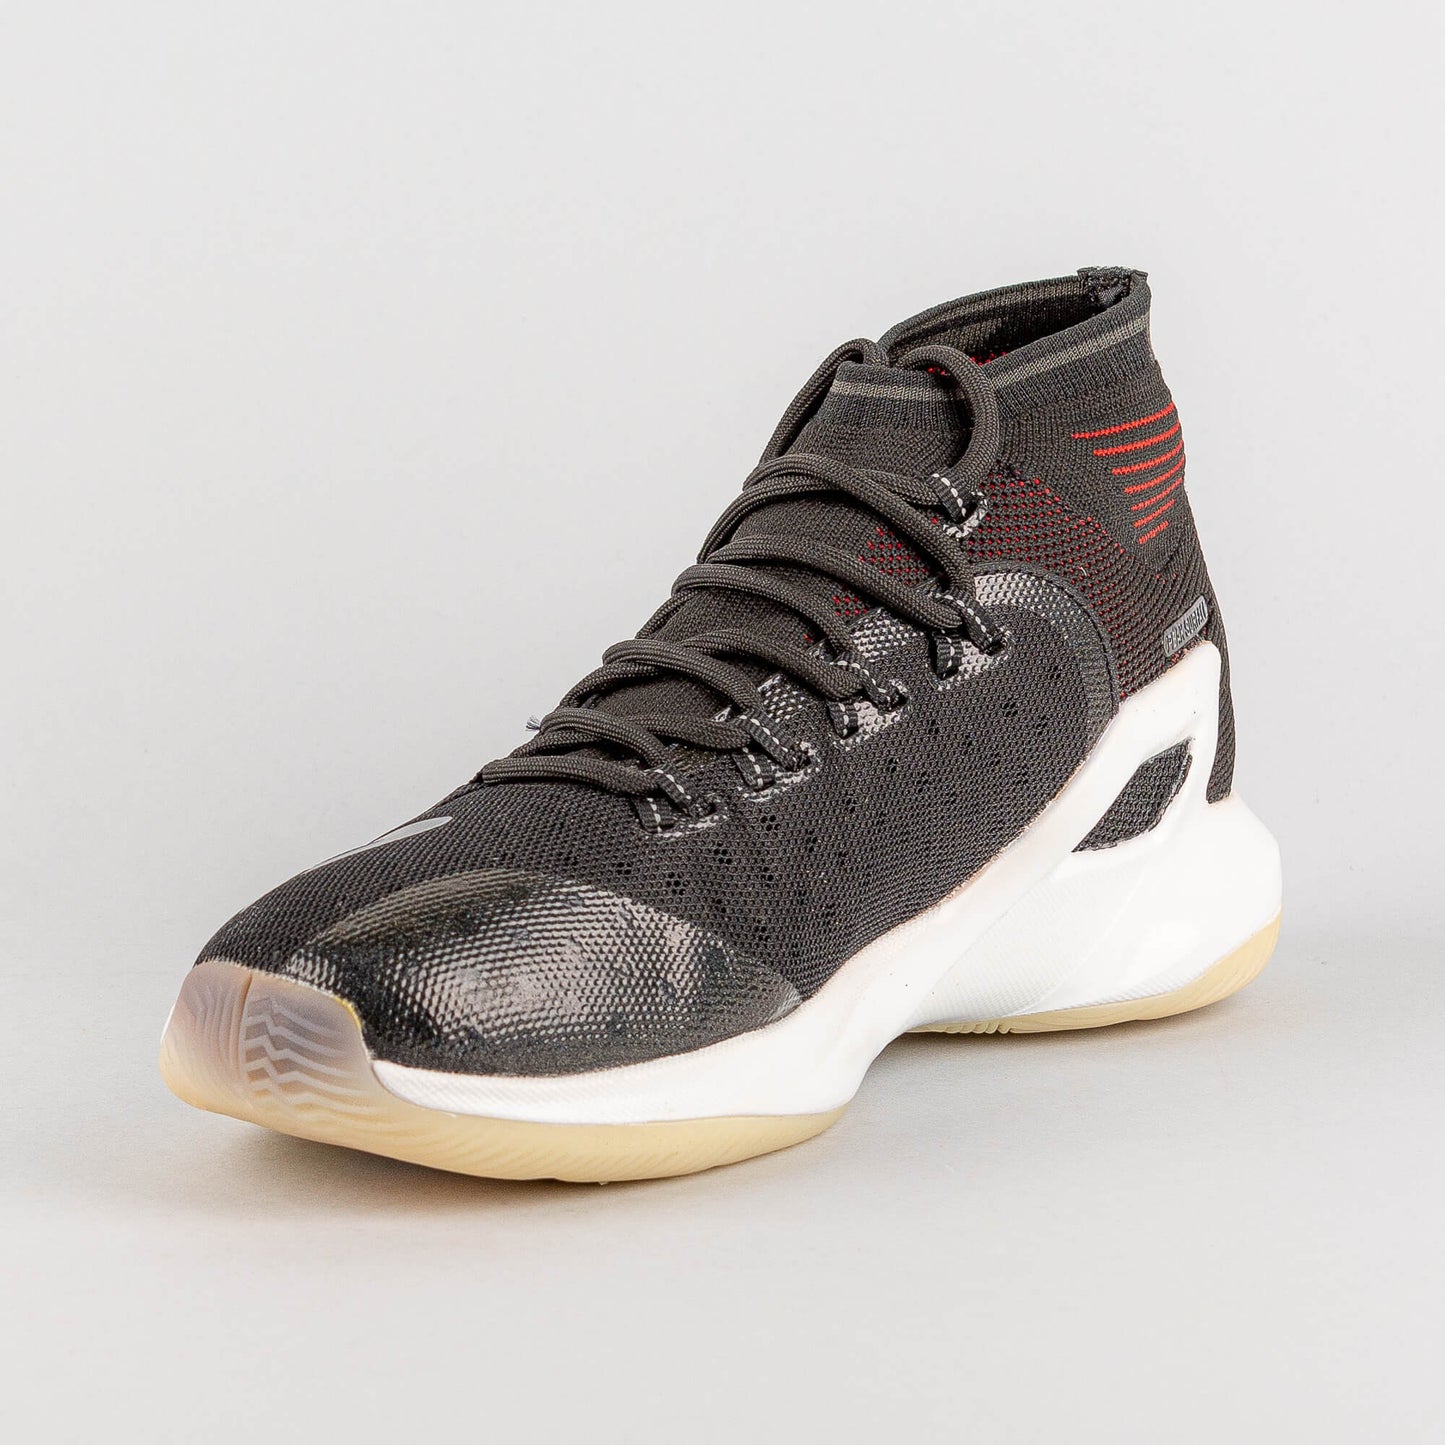 PEAK Tony Parker TP9 5 HI Basketball Shoes BLACK